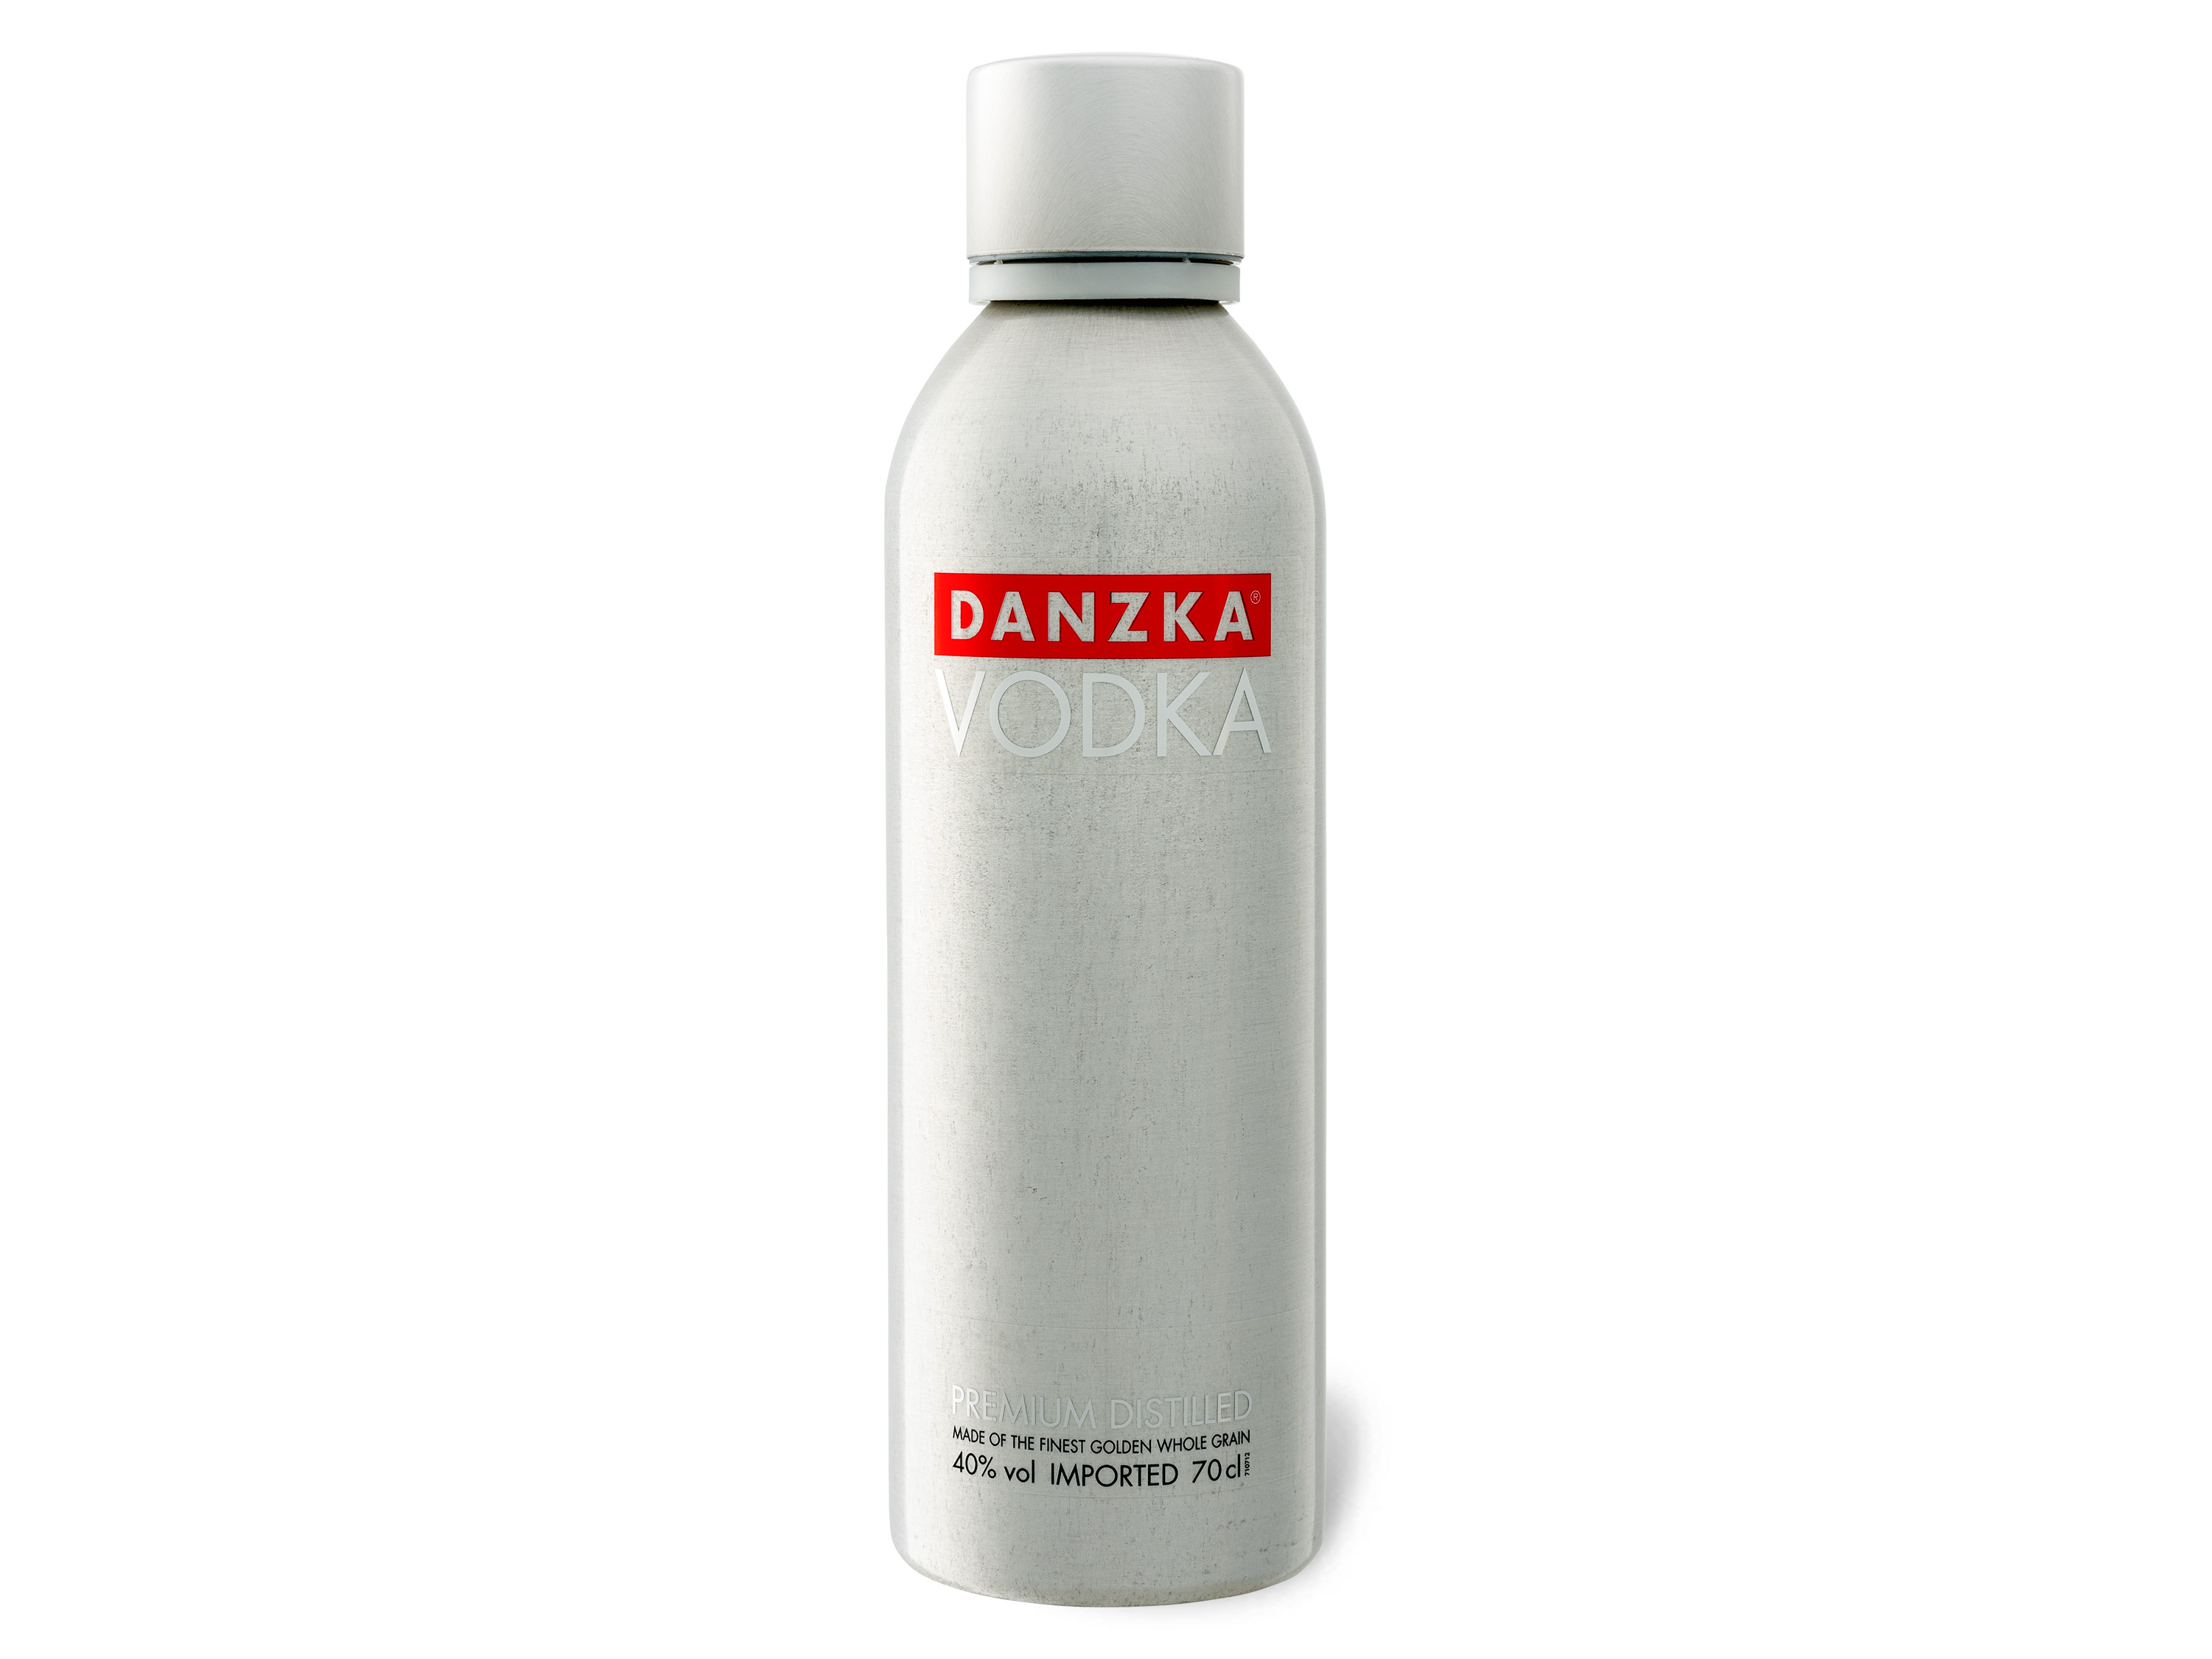 Danzka Vodka 40% Vol